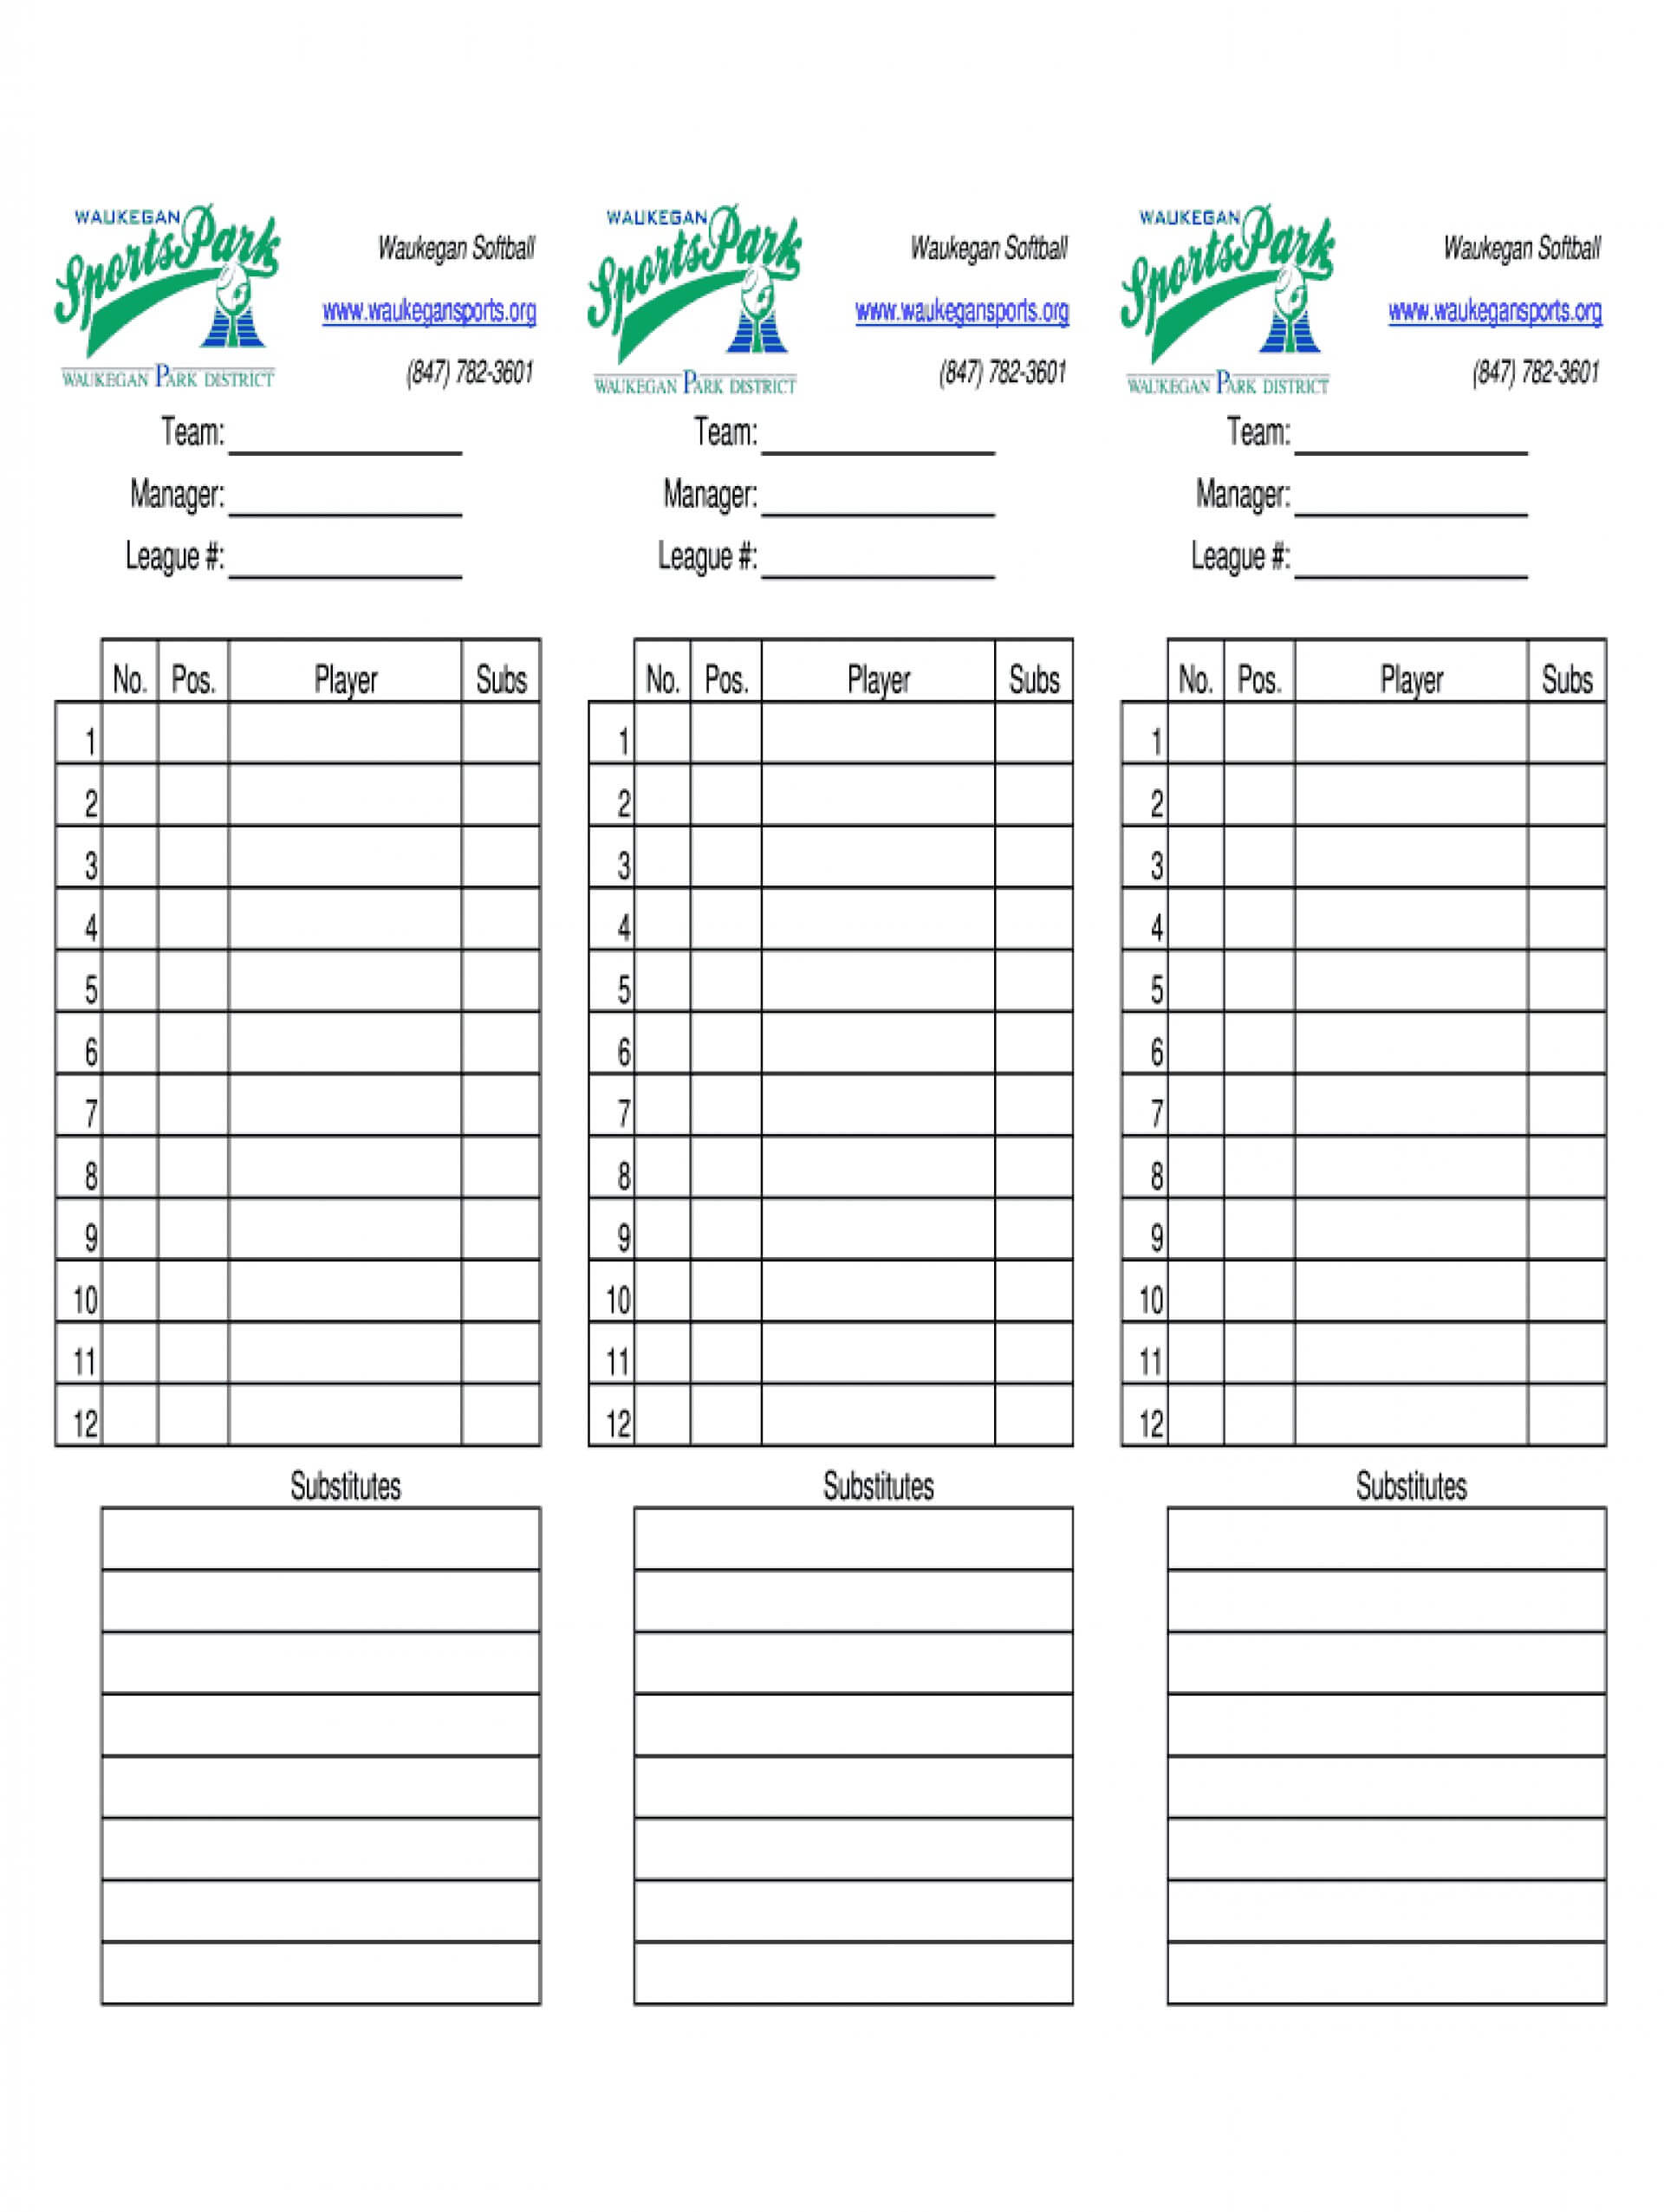 Baseball Lineup Card Template Free Little League Excel Cards With Free Baseball Lineup Card Template